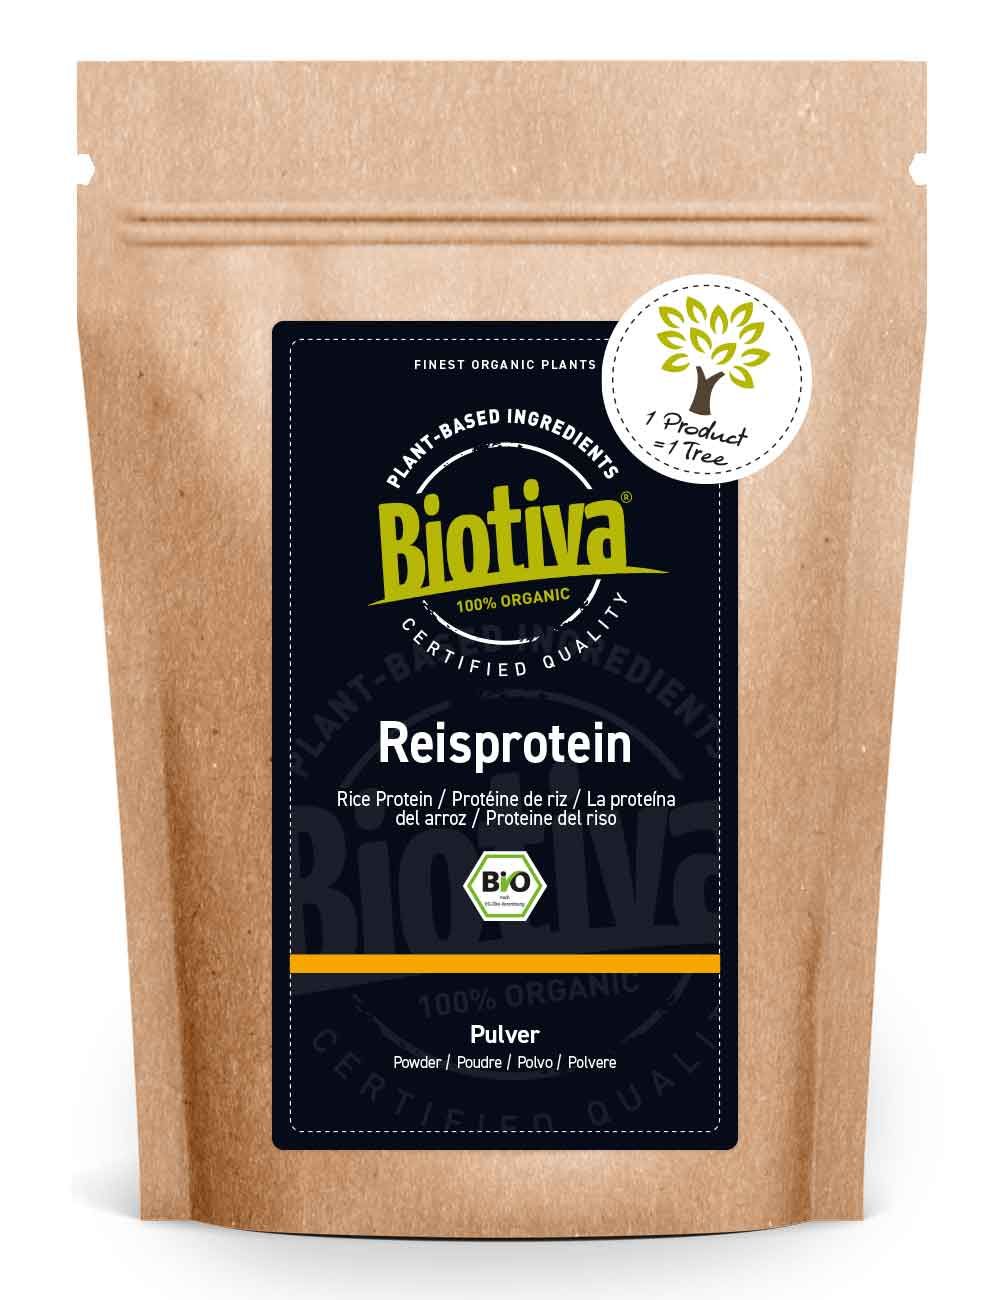 Reisprotein-Pulver Bio